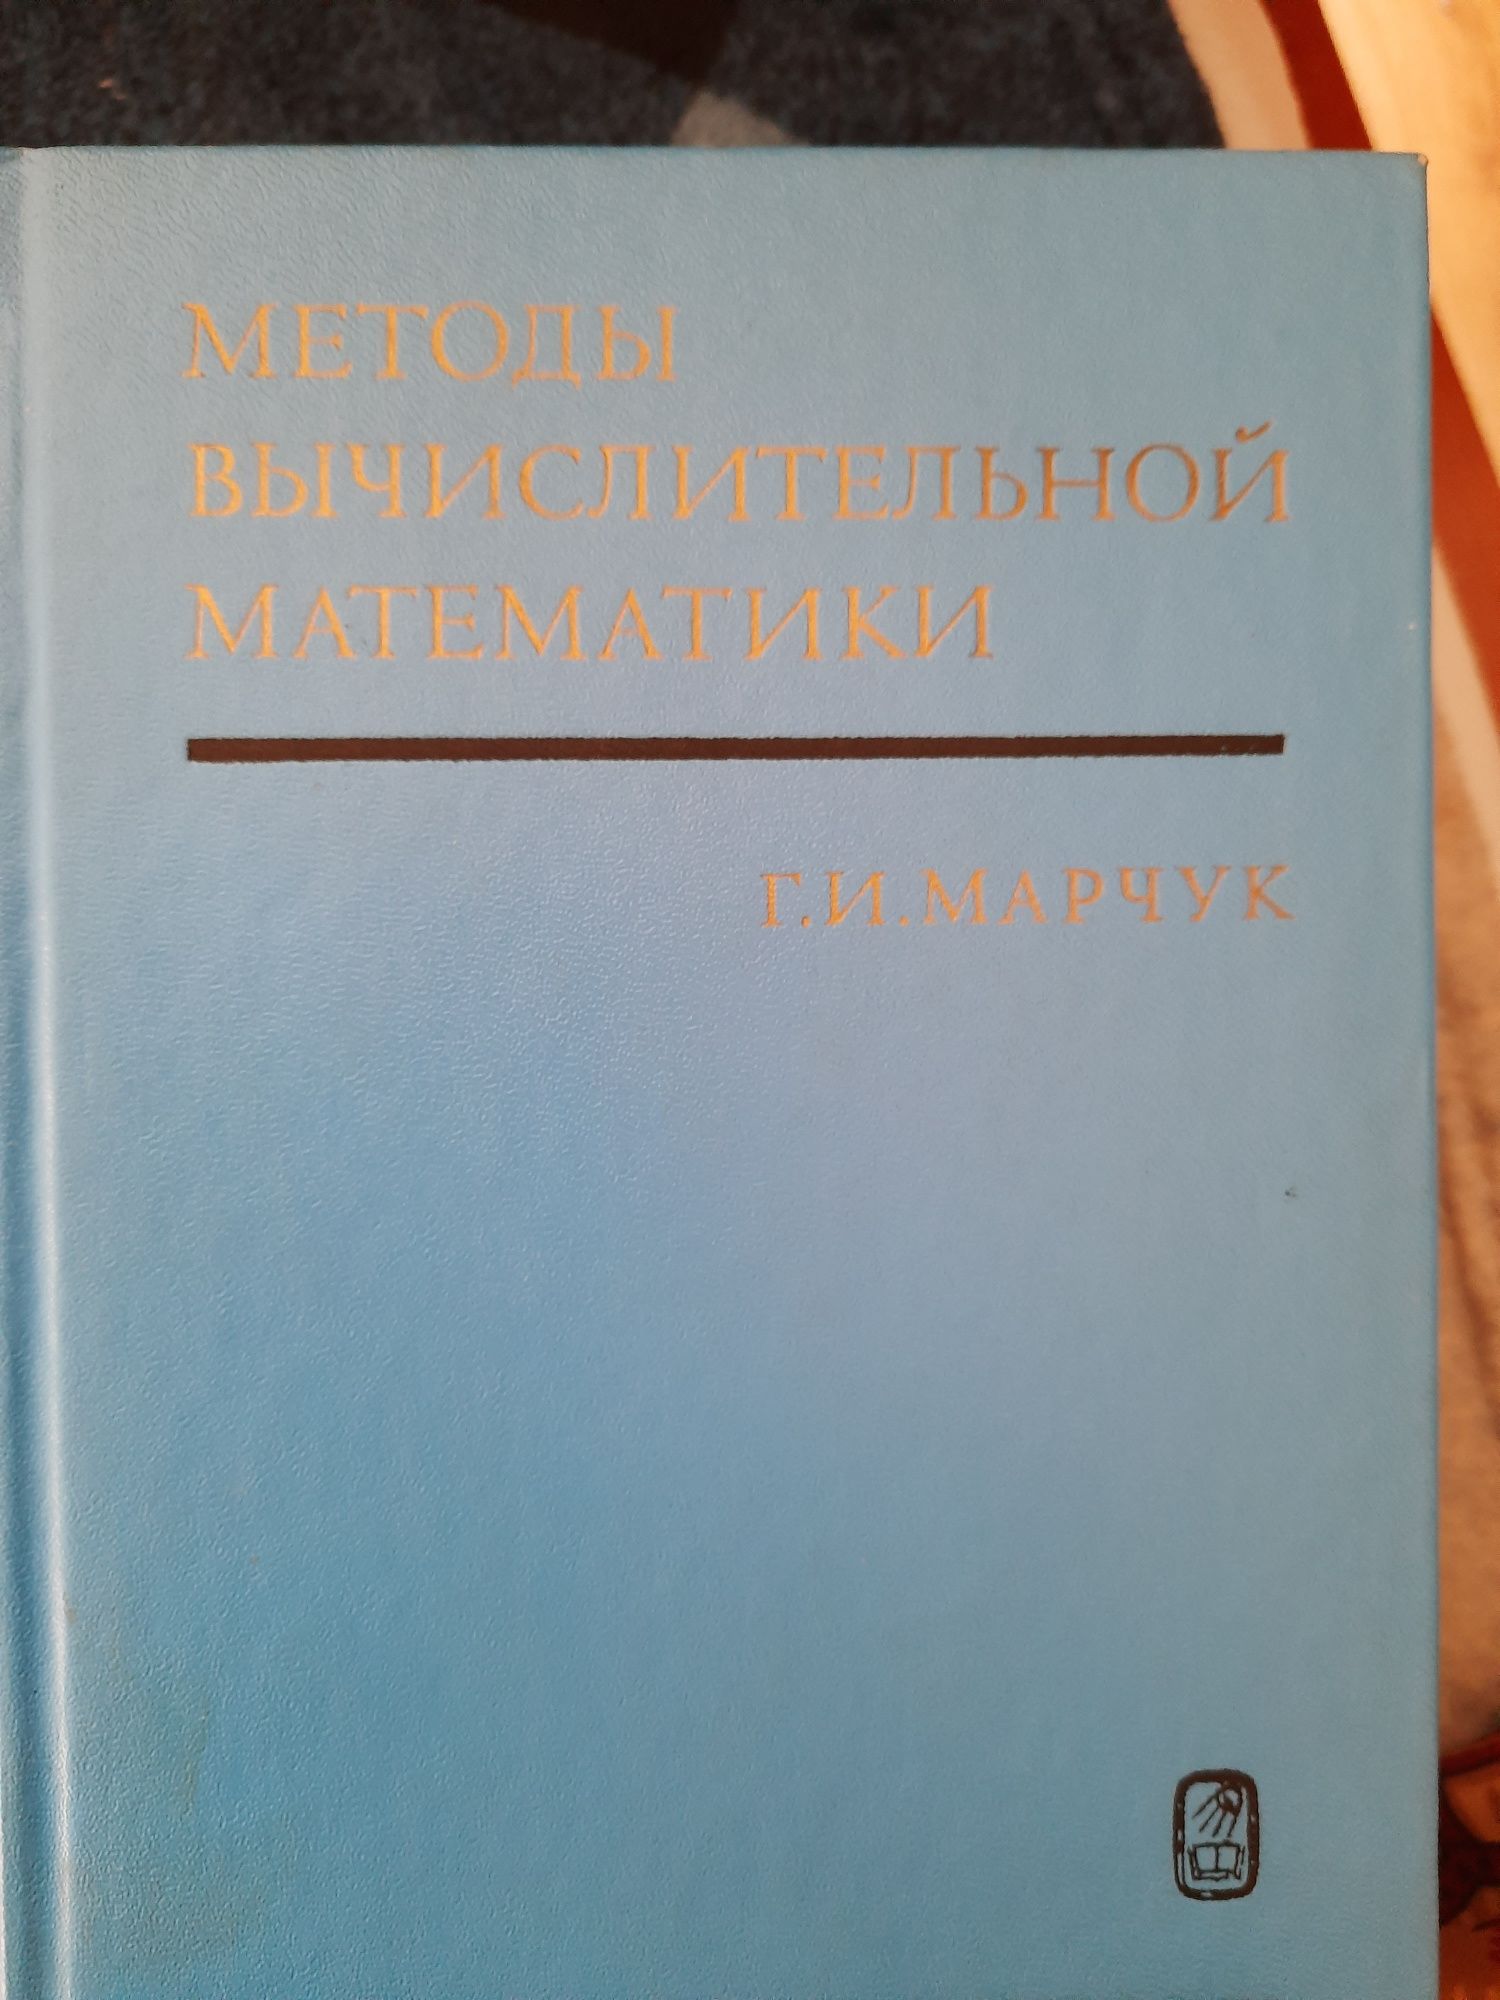 Продам учебники , справочники по высшей математике.